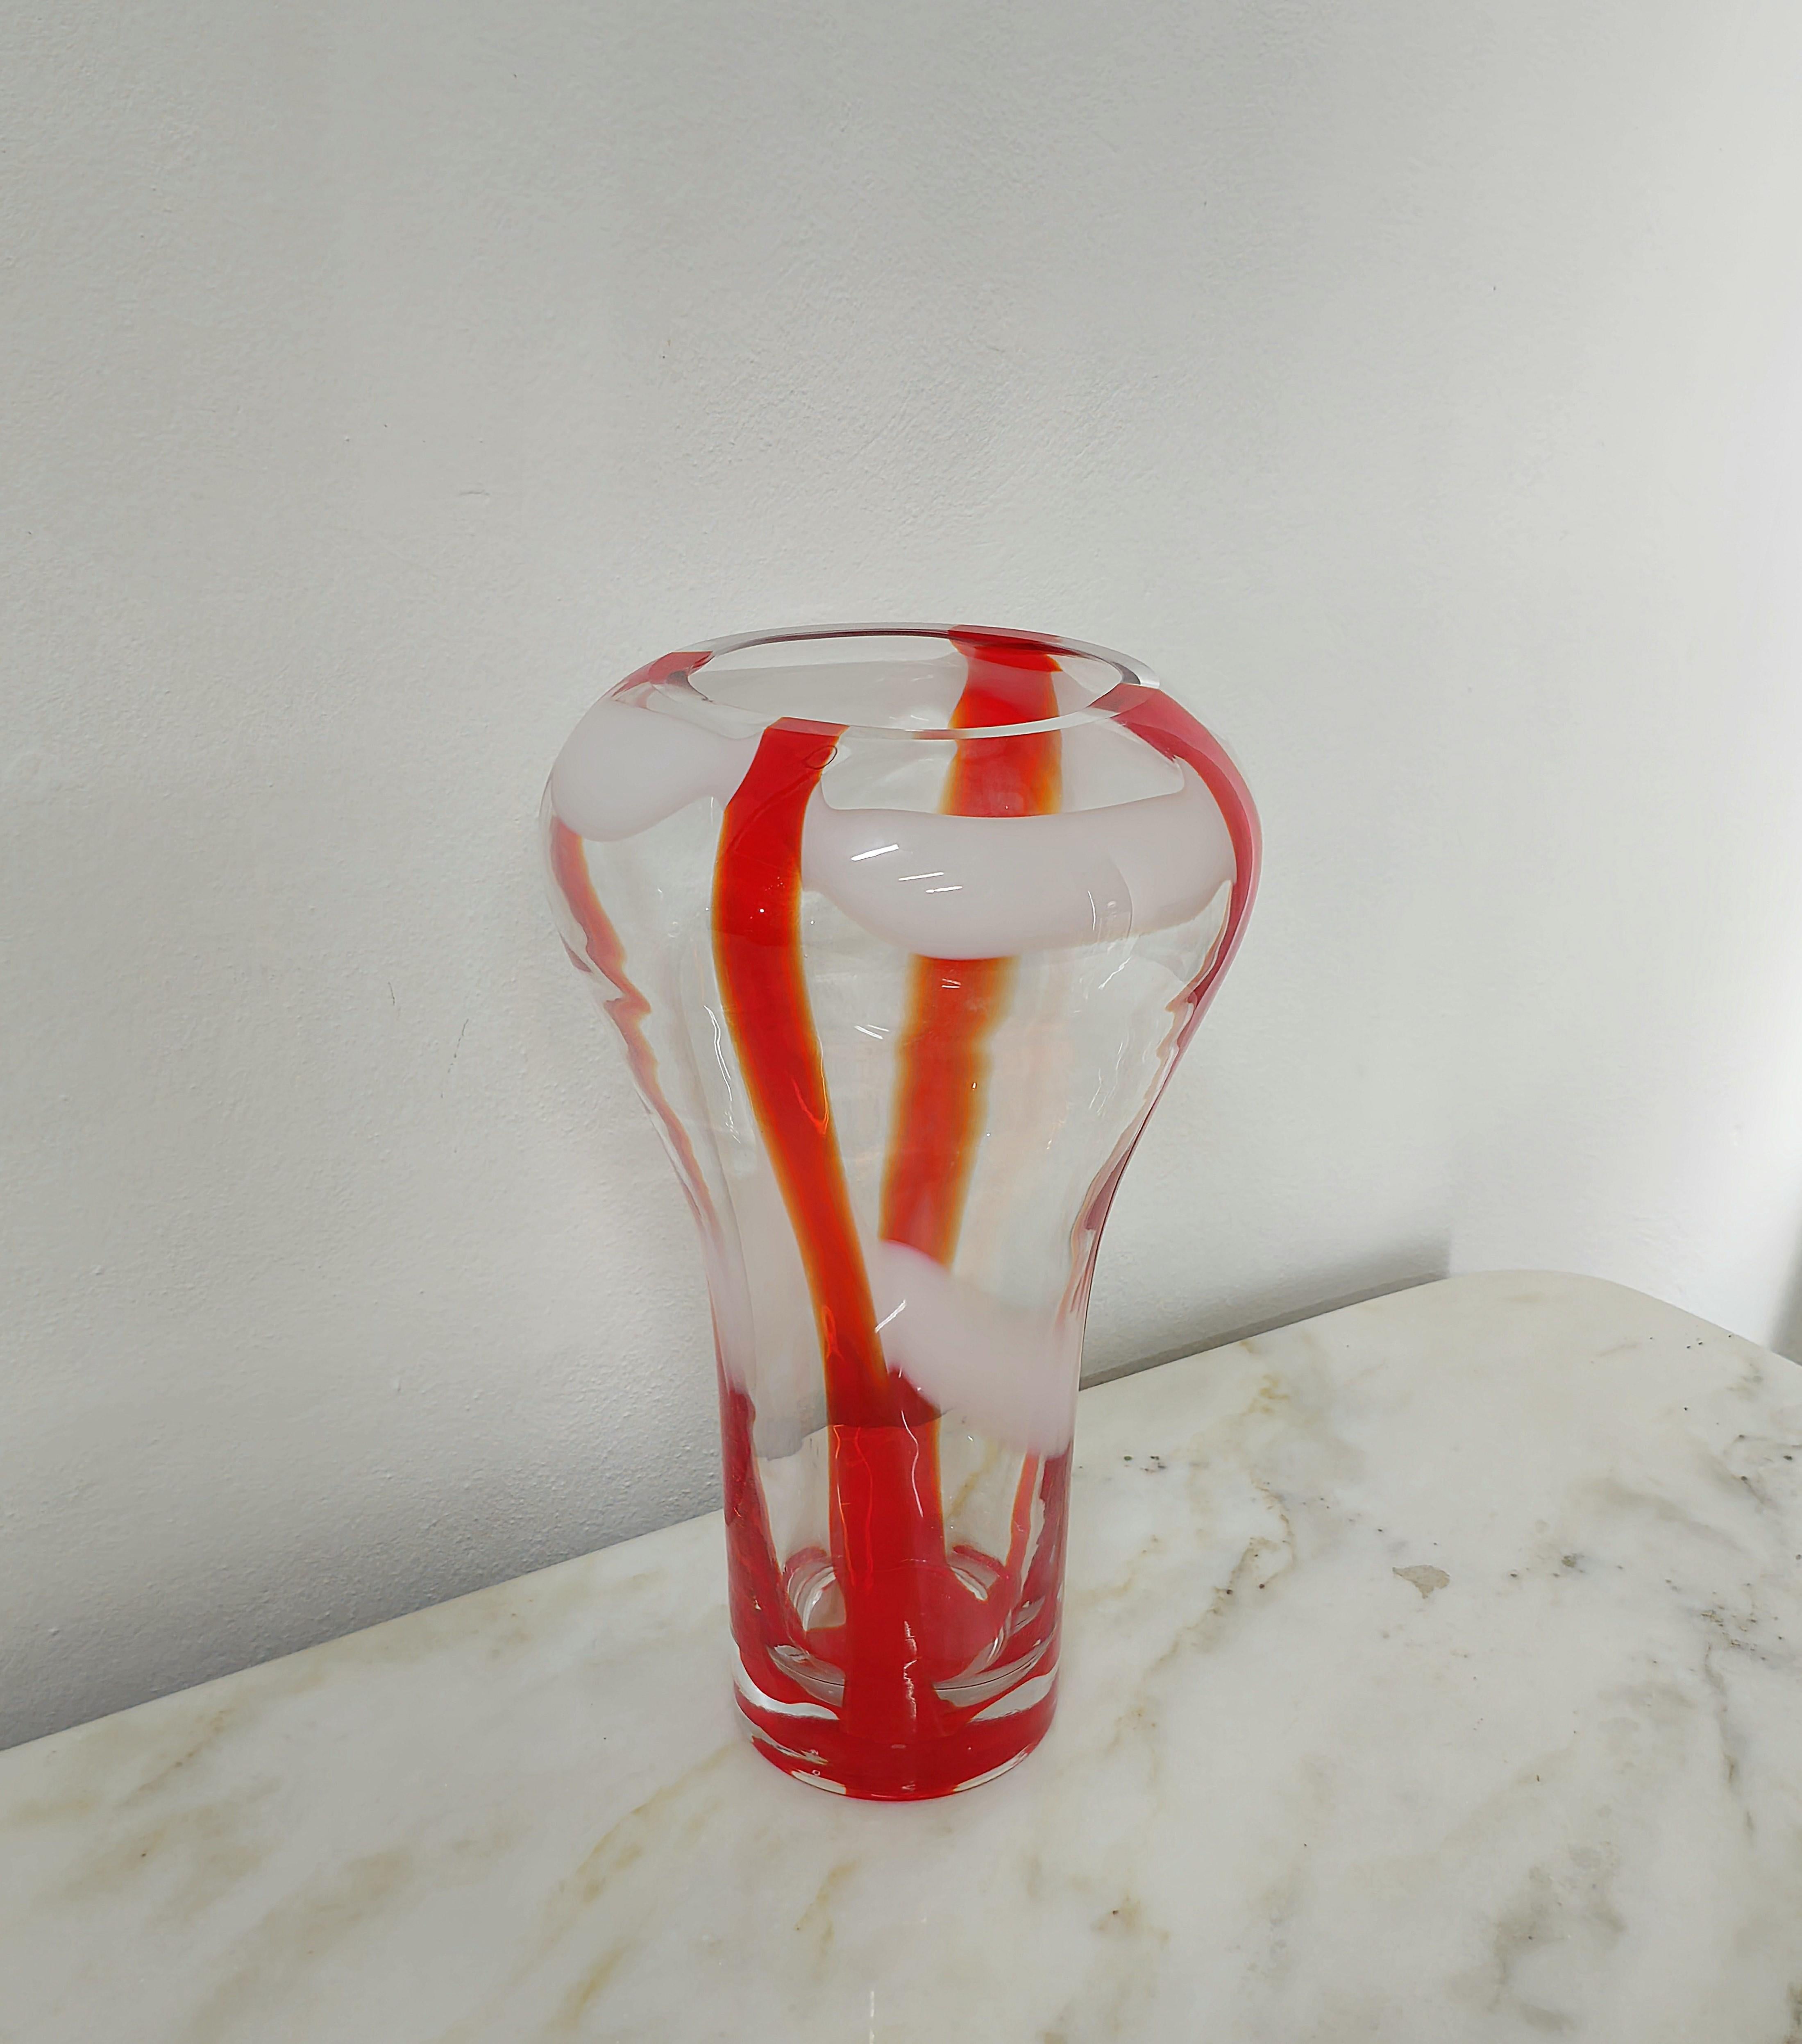 20th Century Decorative Object Vase Guzzini Murano Glass Midcentury Italian Design 1970s For Sale